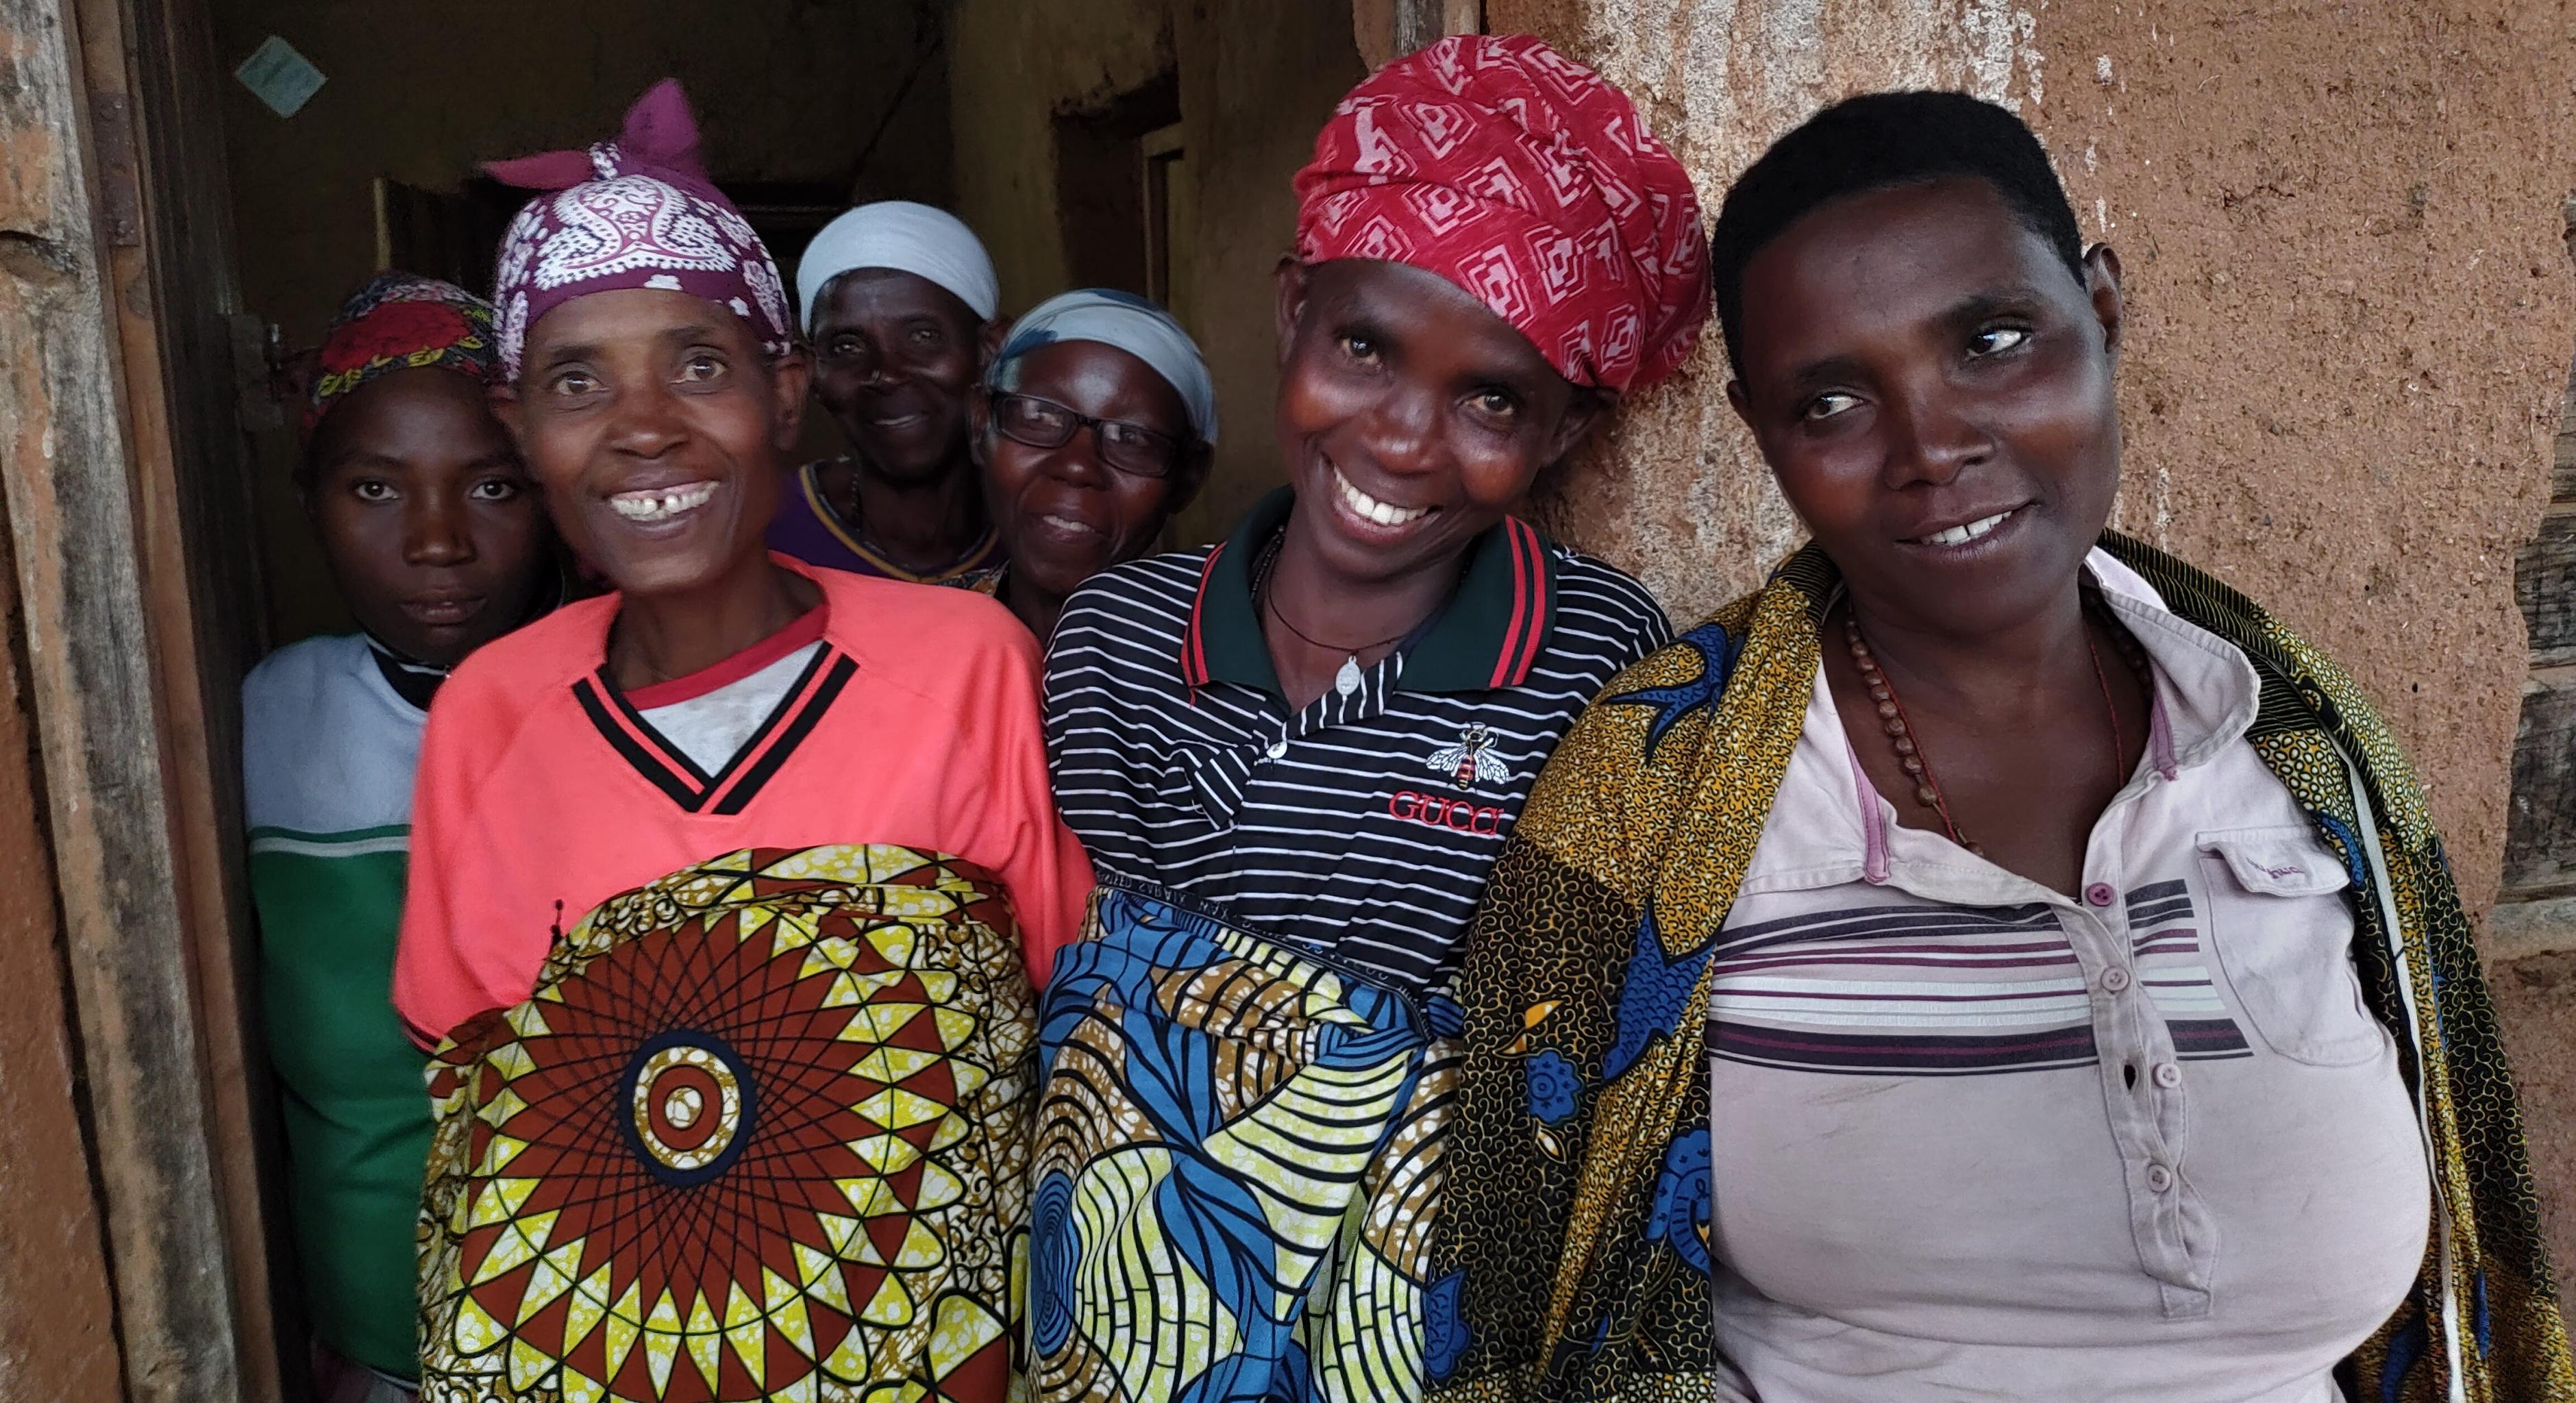 Sechs Frauen der Solidargruppe Bushigikirane. Die Frauen sparen gemeinsam, geben einander Kredite und machen gemeinsame Investitionen. Seit 2018 betreiben sie gemeinsam ein Restaurant. Dabei werden sie von unserer Partnerorganisation ADISCO unterstützt.